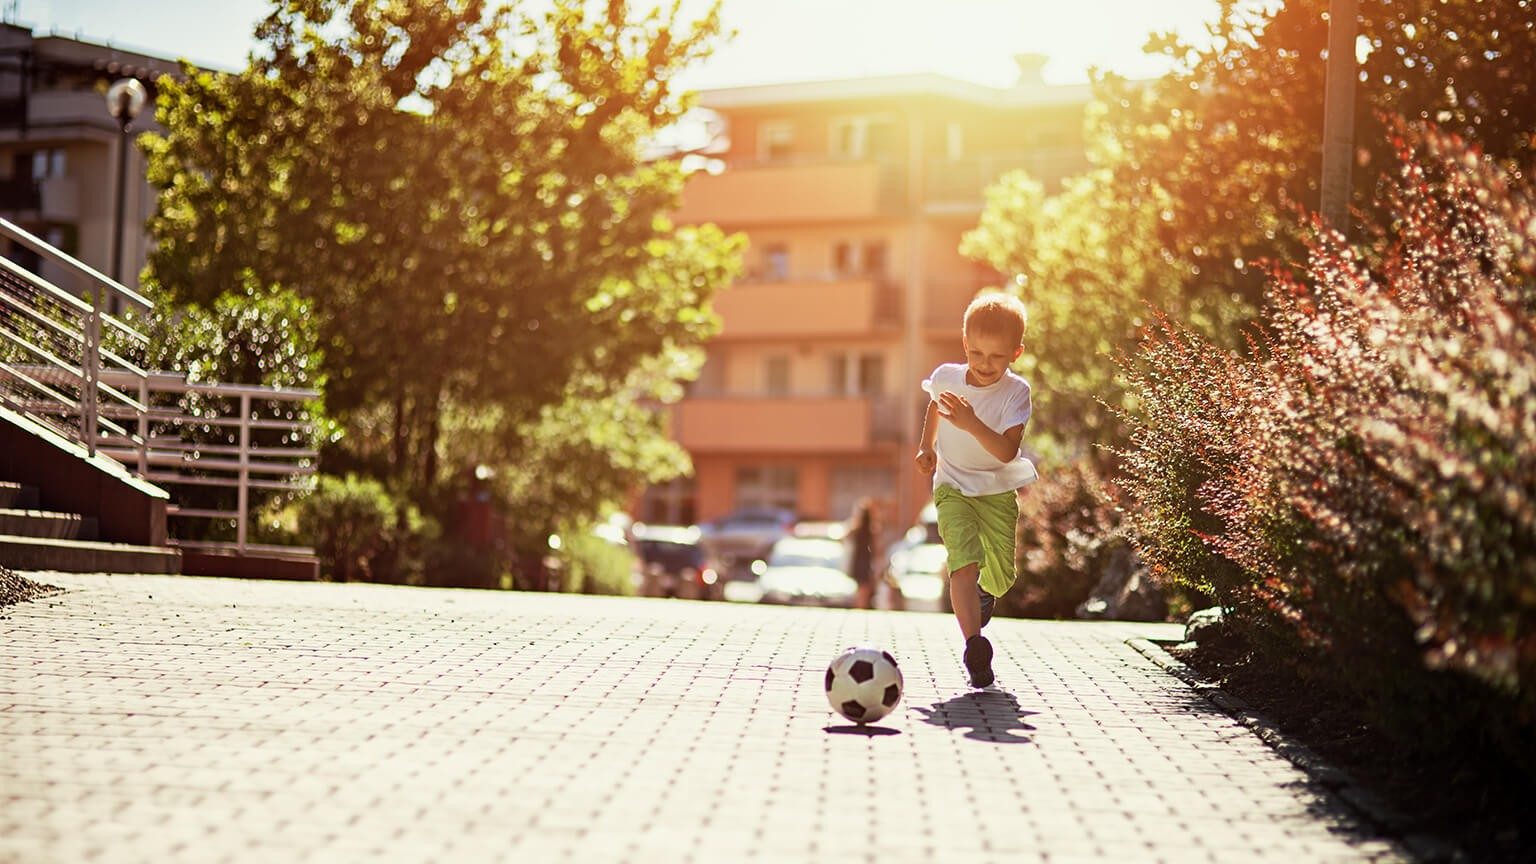 Junge läuft auf der Auffahrt hinter einem Fußball her 